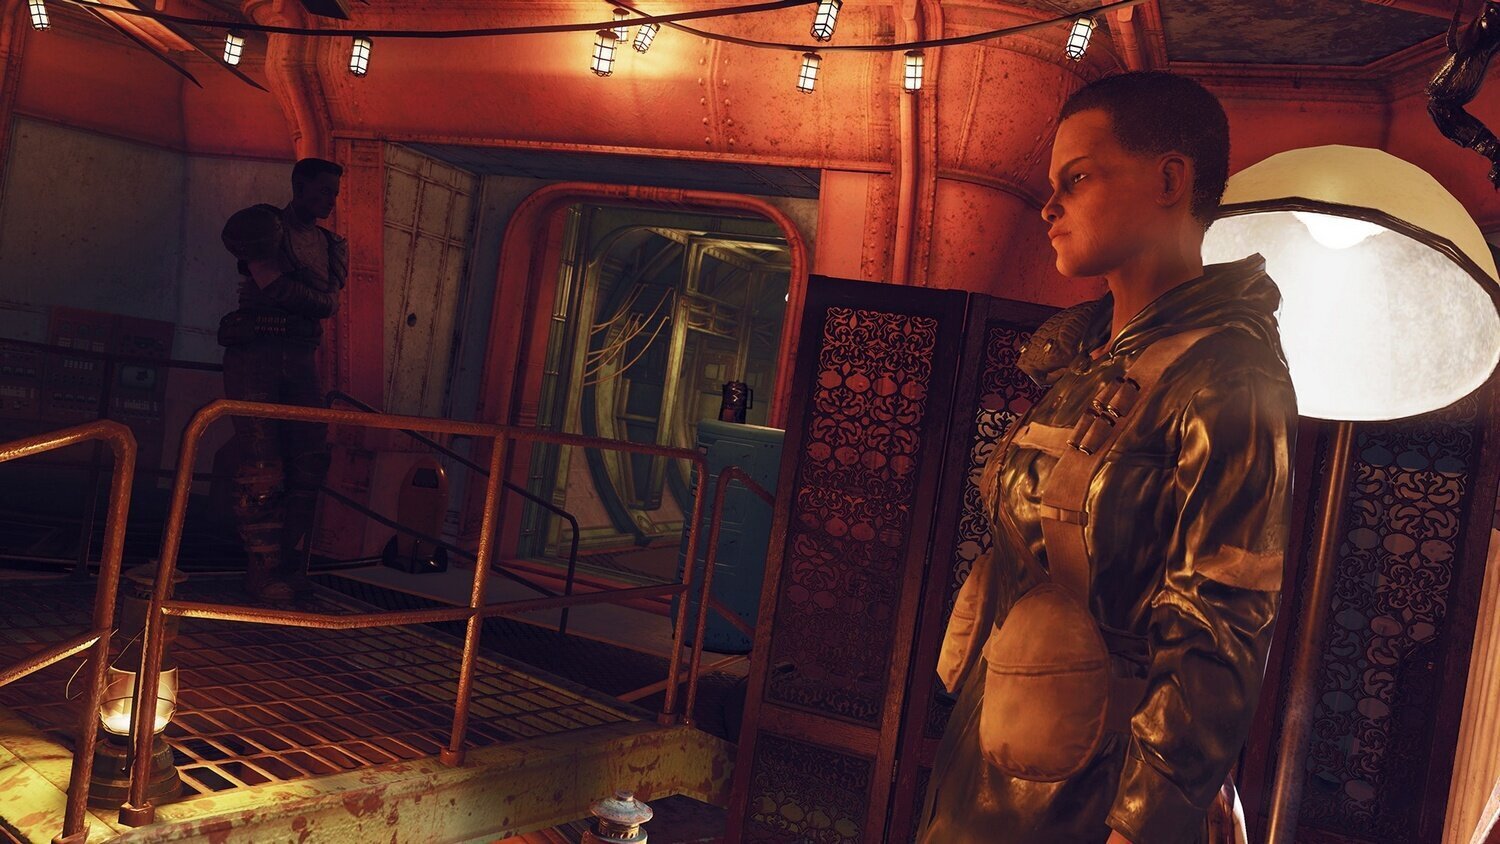 PS4 Fallout 76: Wastelanders cena un informācija | Datorspēles | 220.lv